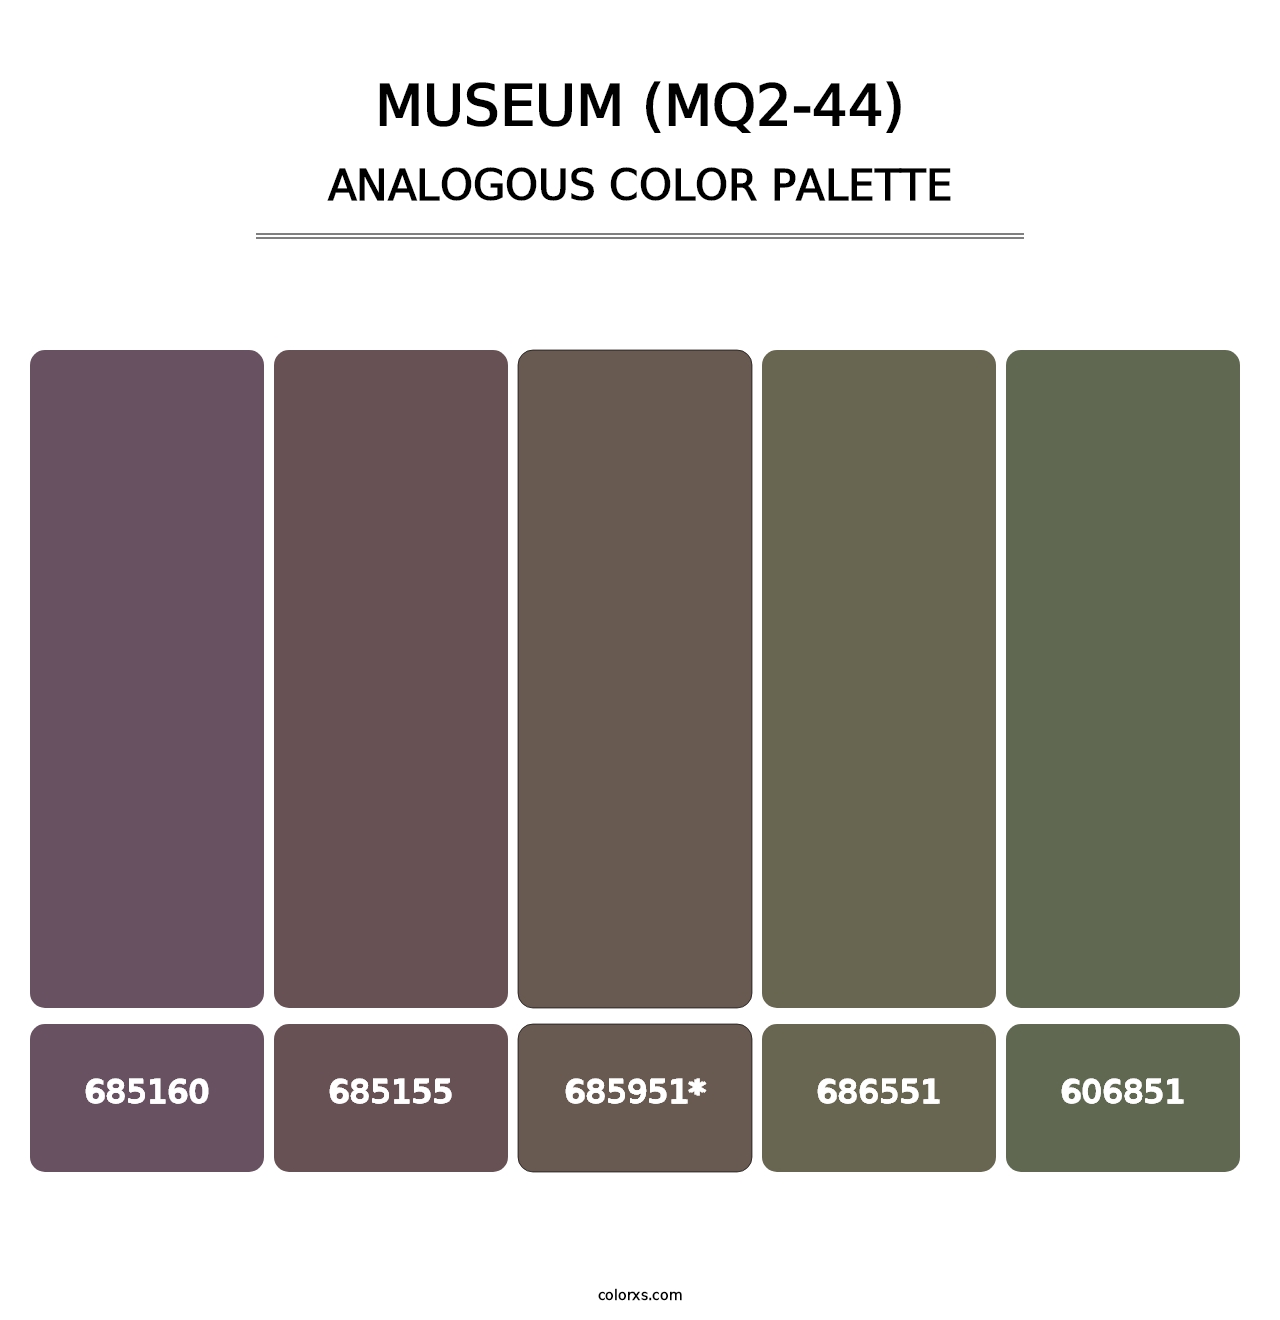 Museum (MQ2-44) - Analogous Color Palette